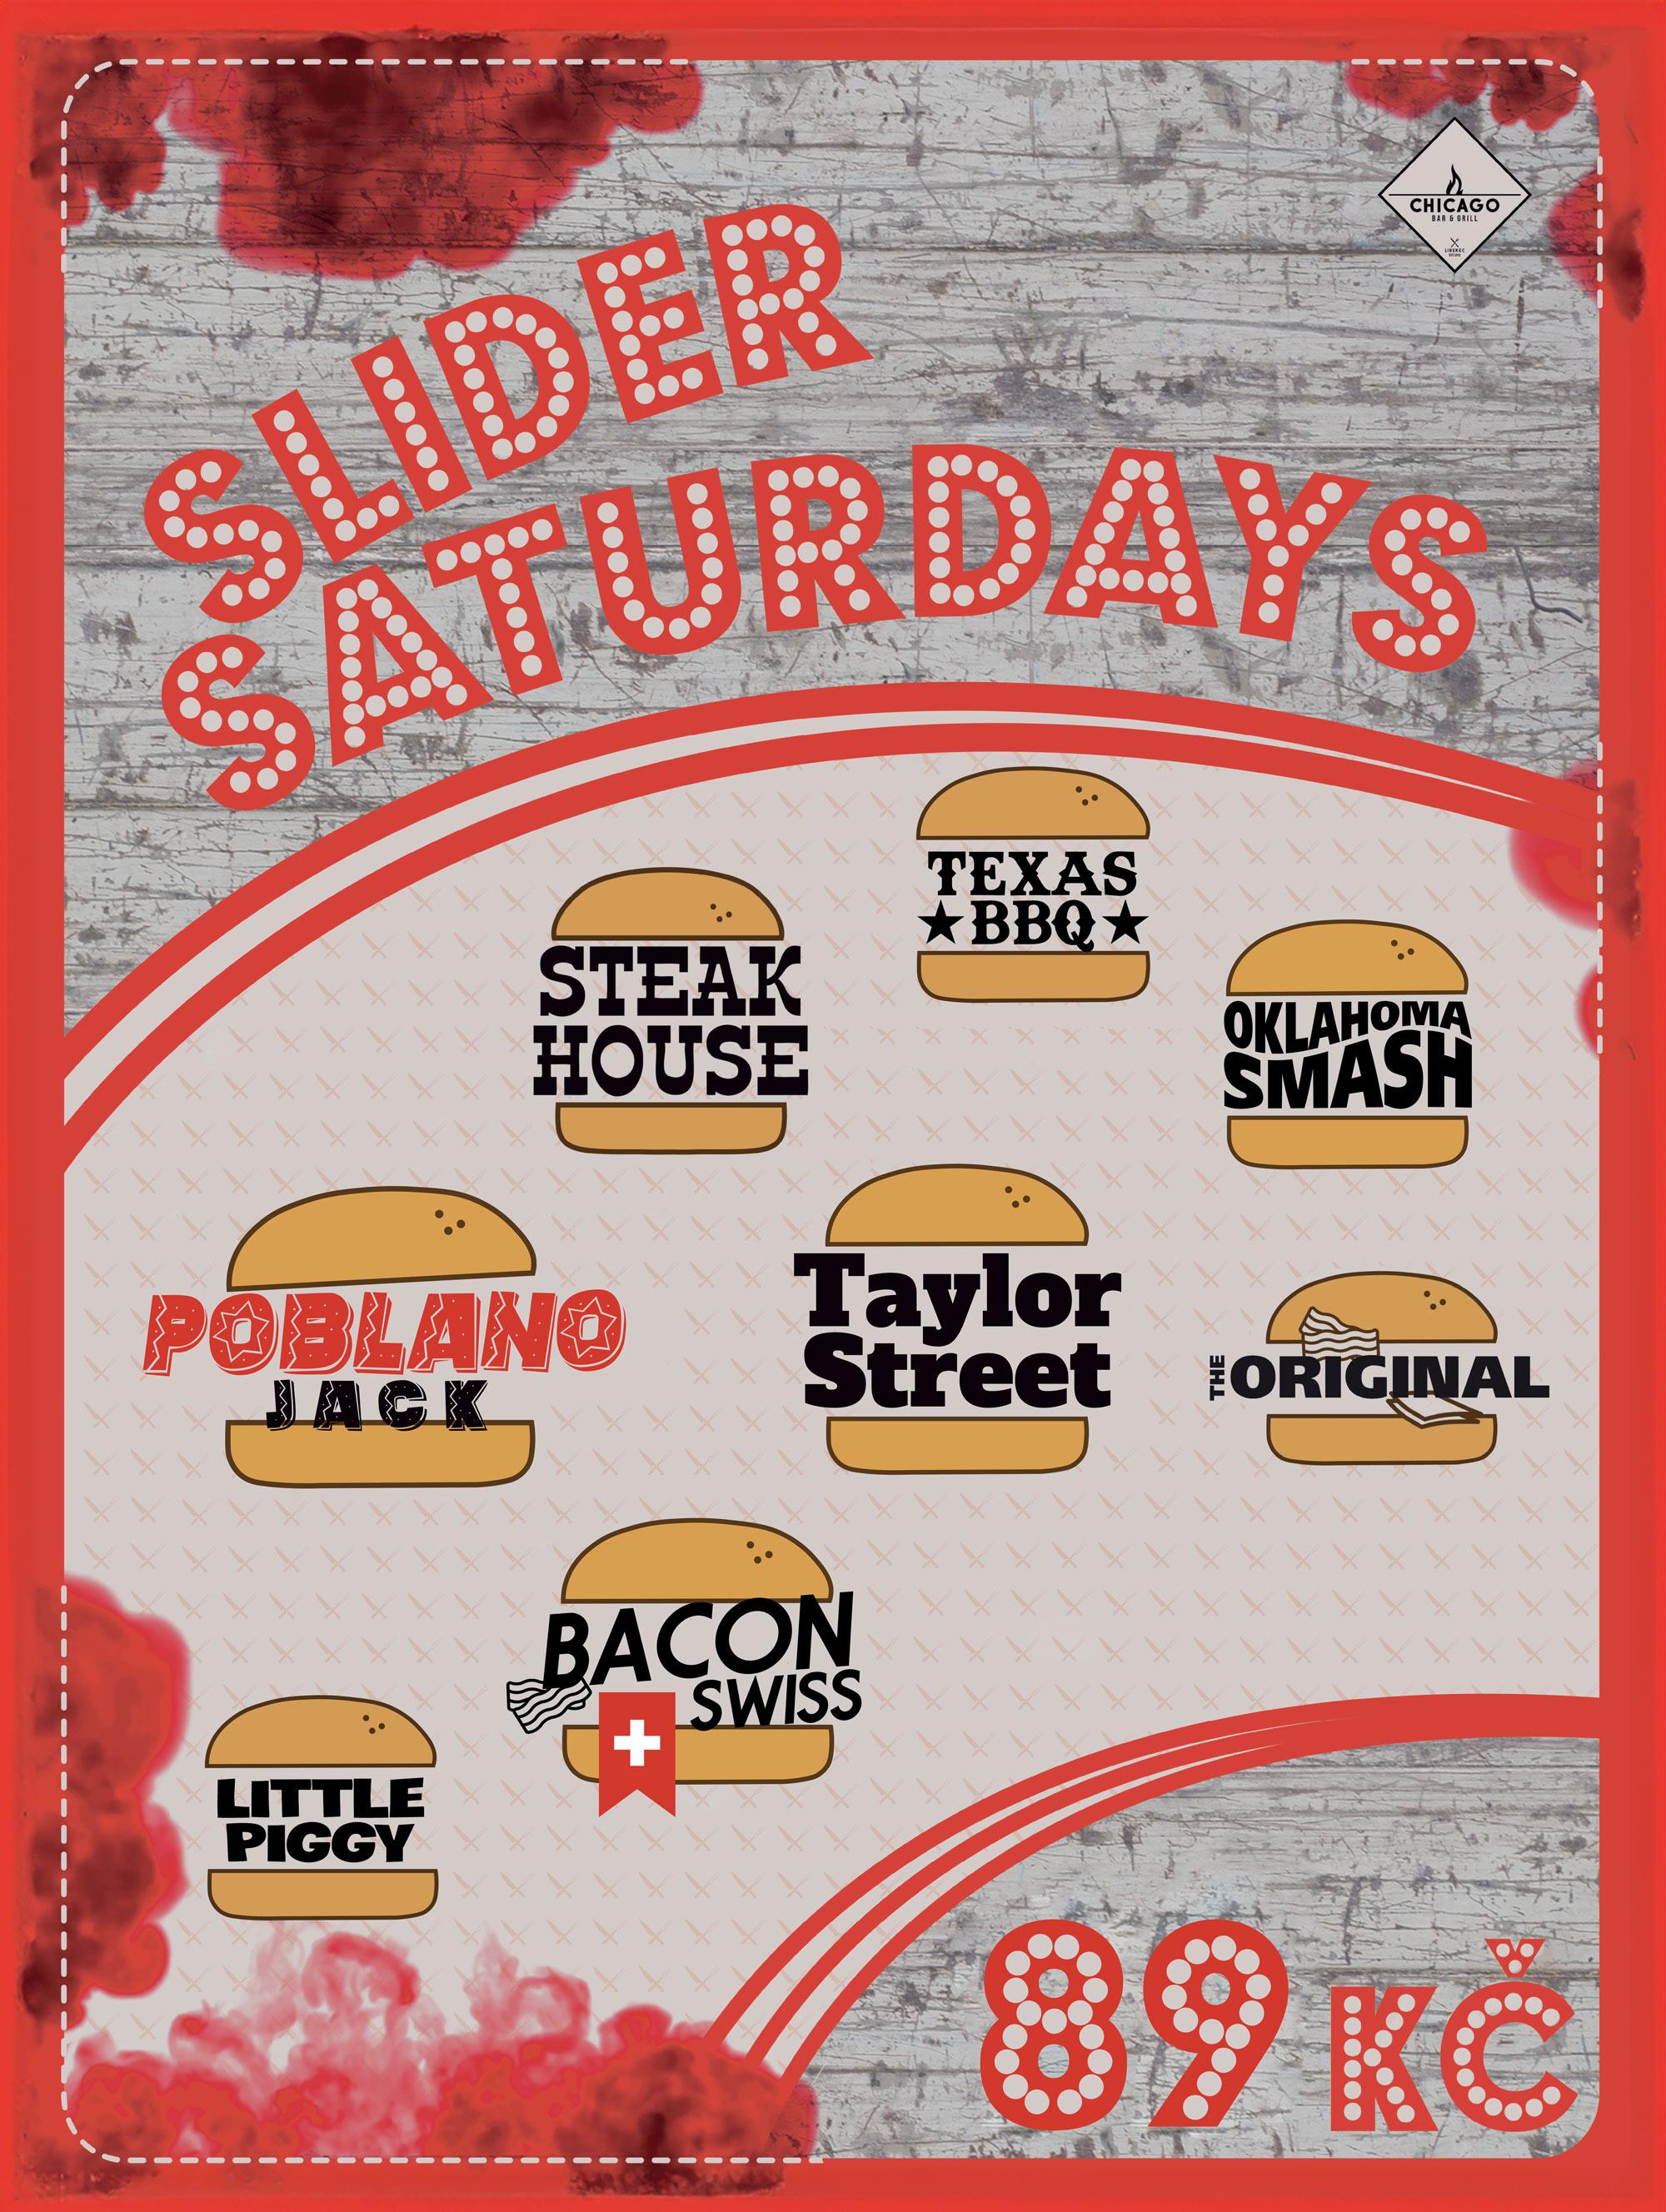 Slider Saturday • Každou sobotu miniburgery „SLIDERS“ jen za 89 Kč!

The Original, Taylor Street, Bacon Swiss, Poblano Jack, Texas BBQ, Oklahoma Smash, Steak House a Little Piggy

(neplatí pro objednávky s sebou)
